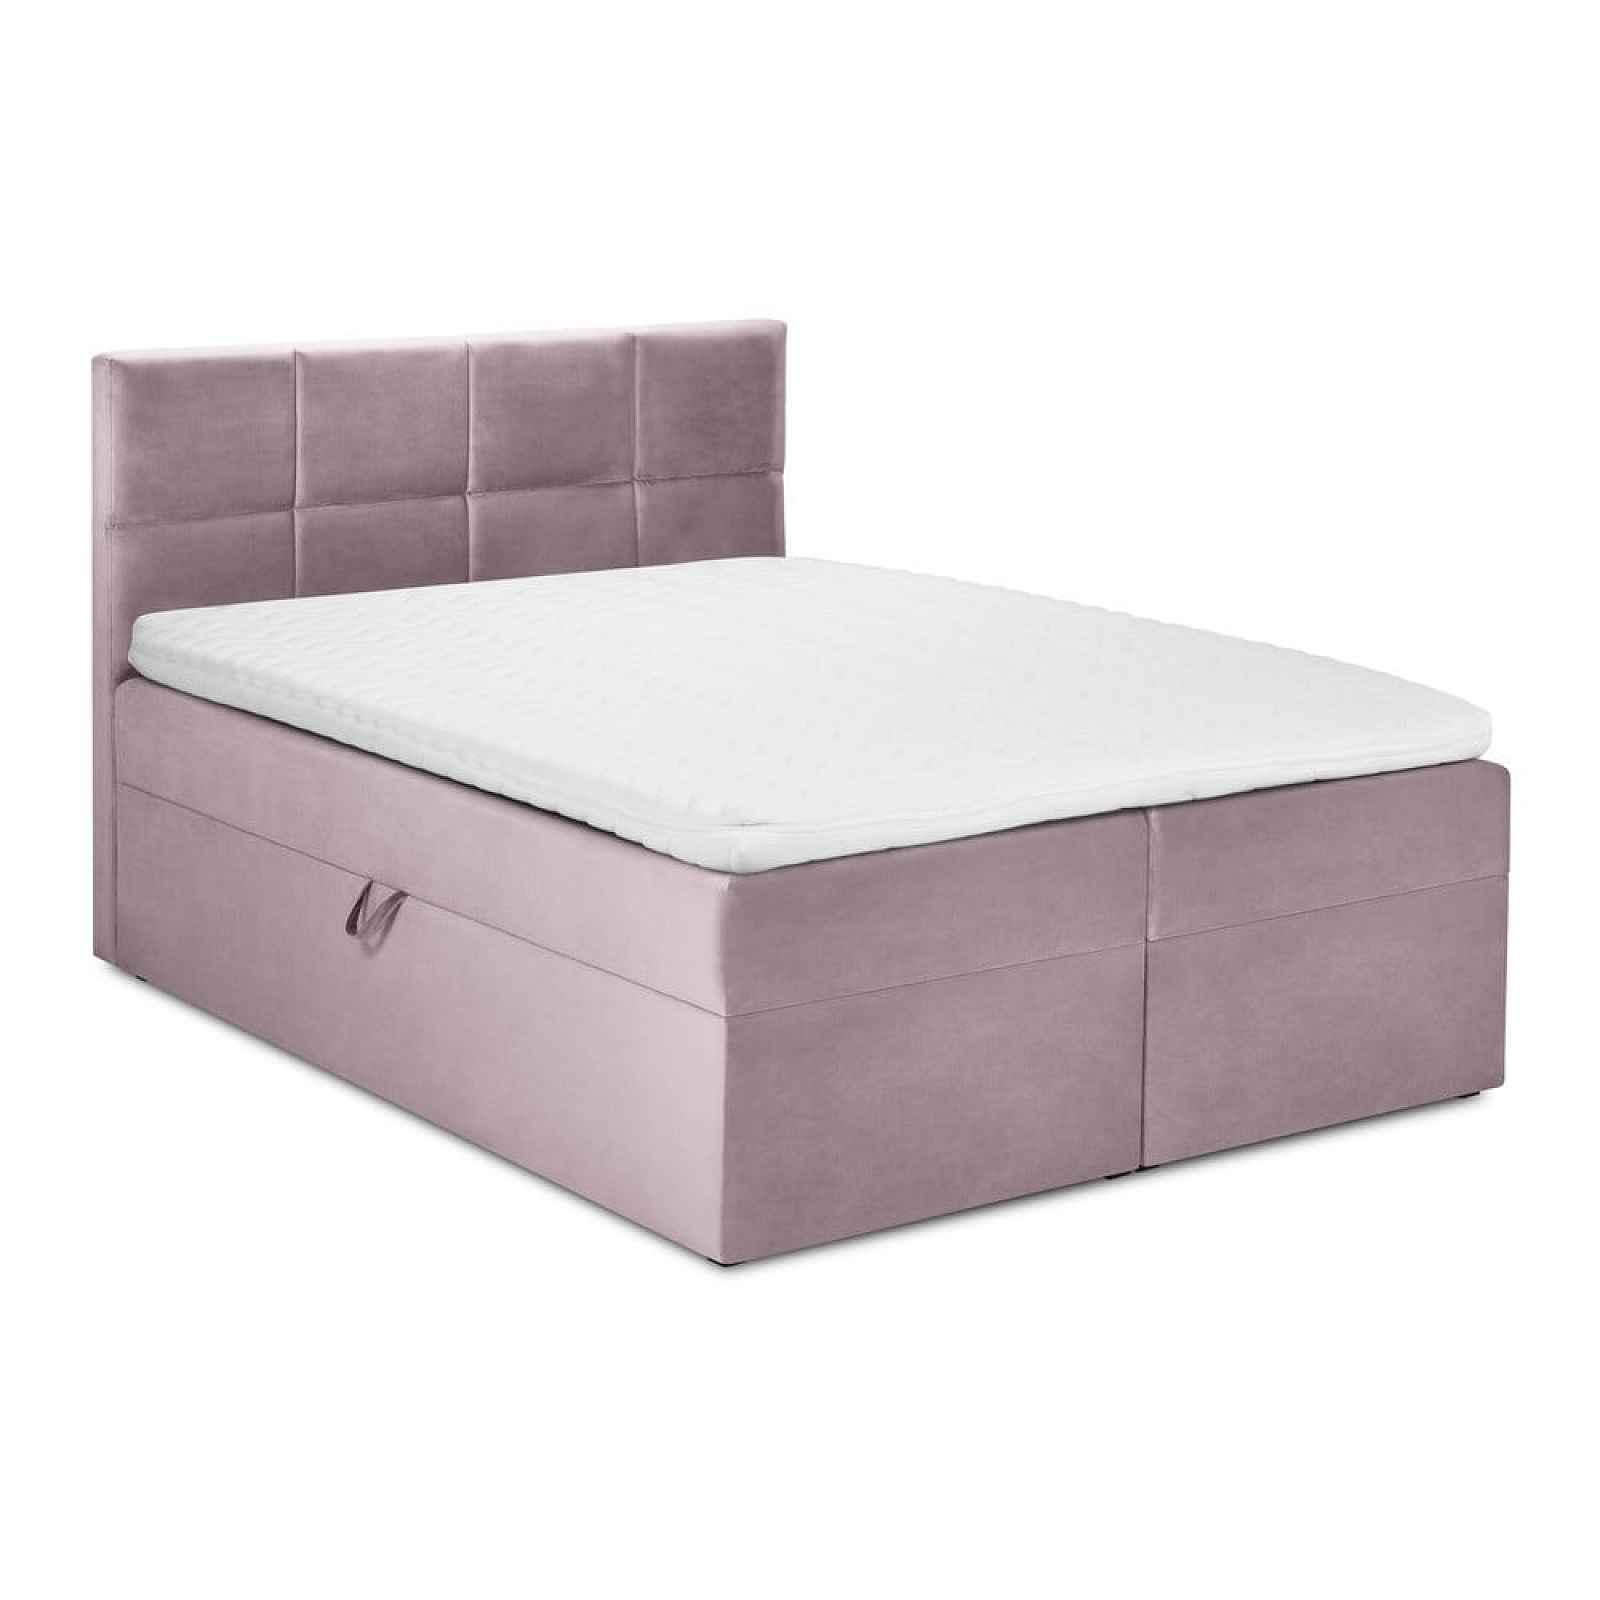 Růžová sametová dvoulůžková postel Mazzini Beds Mimicry, 160 x 200 cm